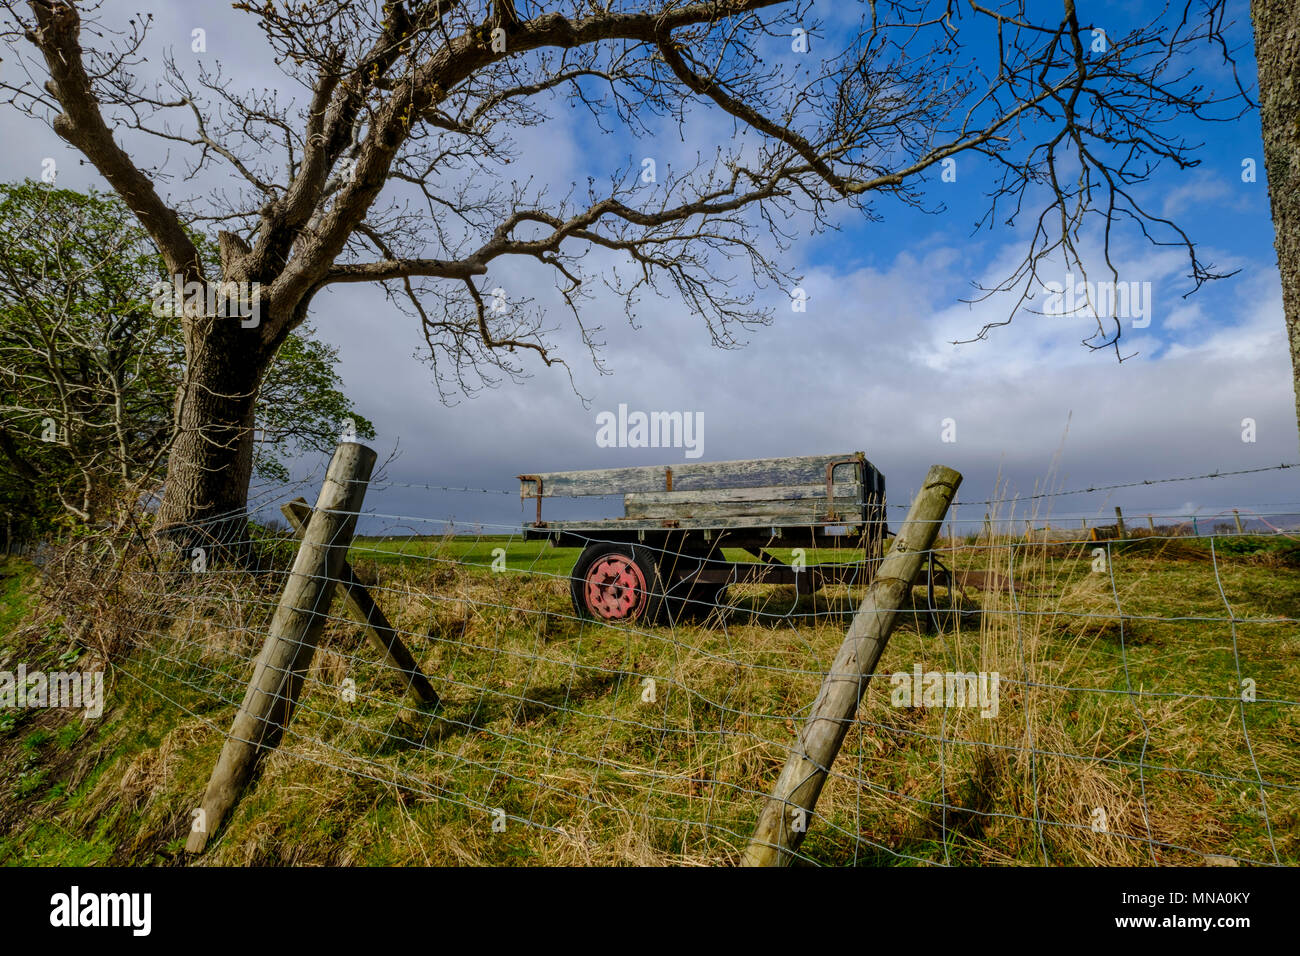 Format paysage écossais de scène rurale de old weathered remorque agricole dans la zone avec des branches d'arbre et ciel nuageux Banque D'Images